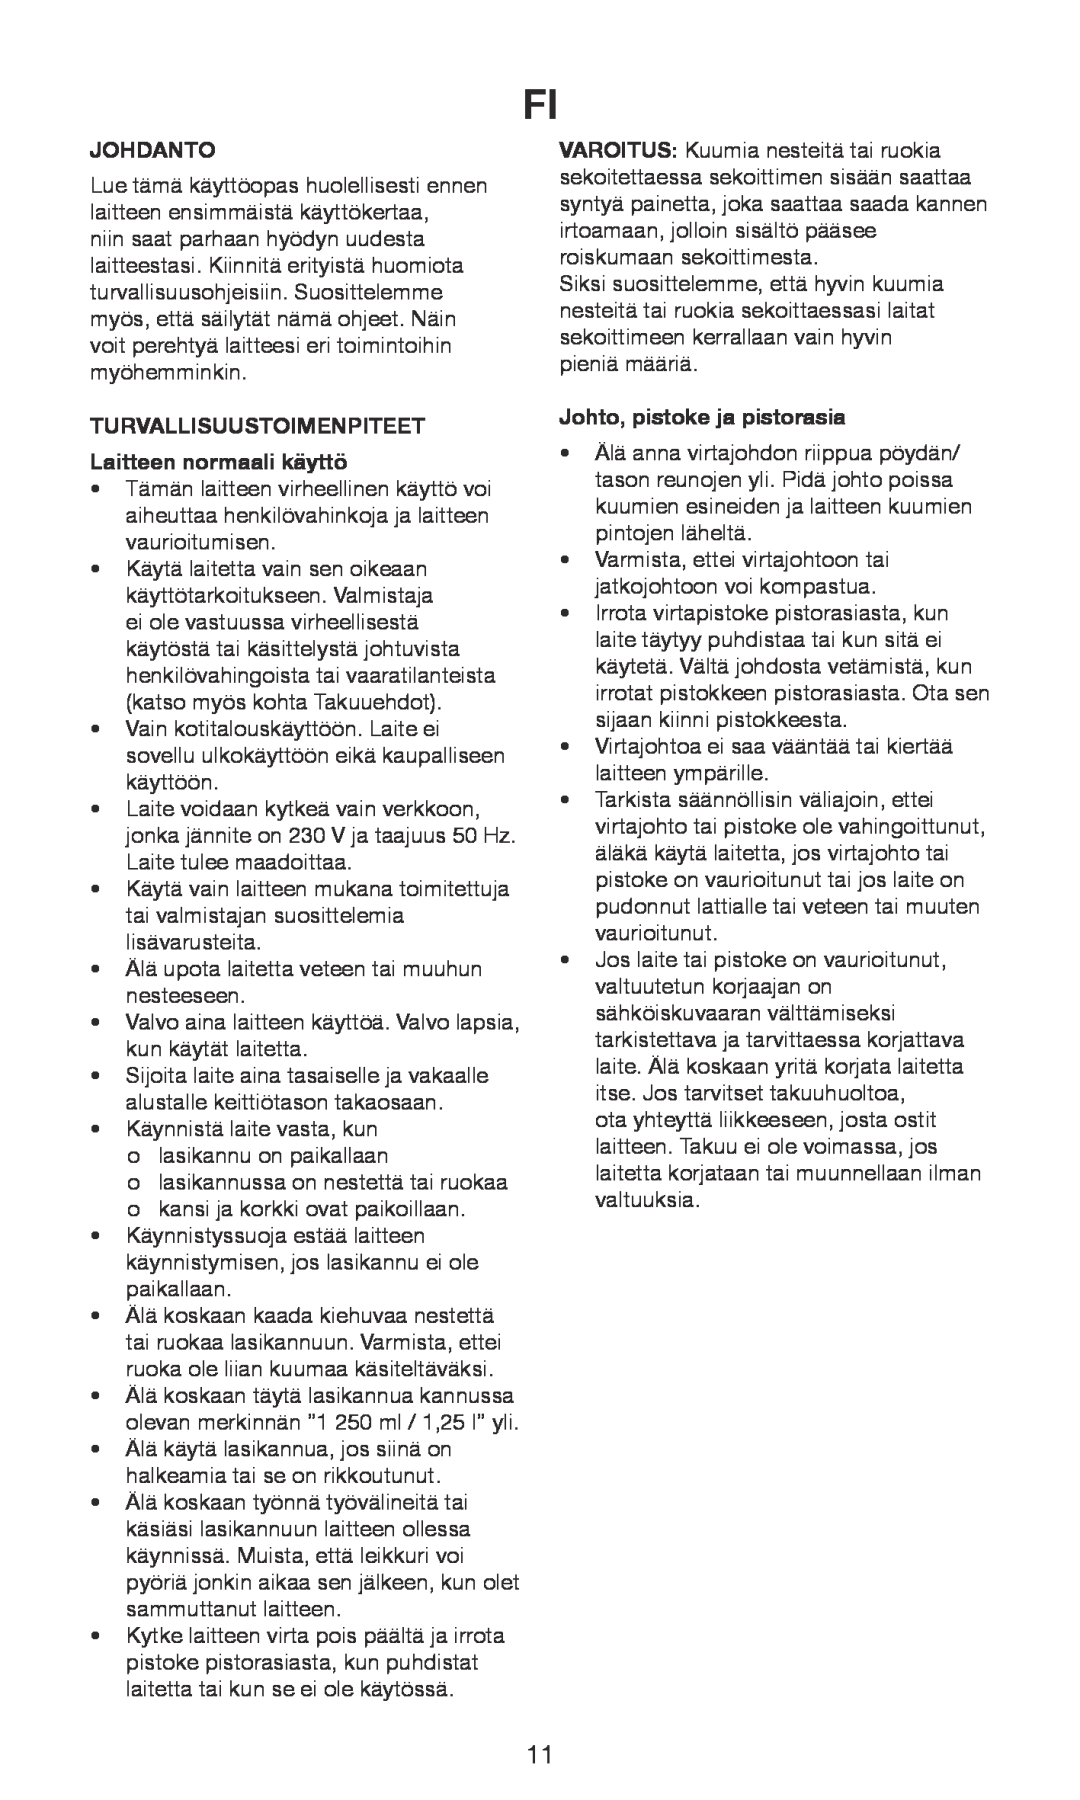 Exido 246-029 manual Johdanto, TURVALLISUUSTOIMENPITEET Laitteen normaali käyttö, Johto, pistoke ja pistorasia 